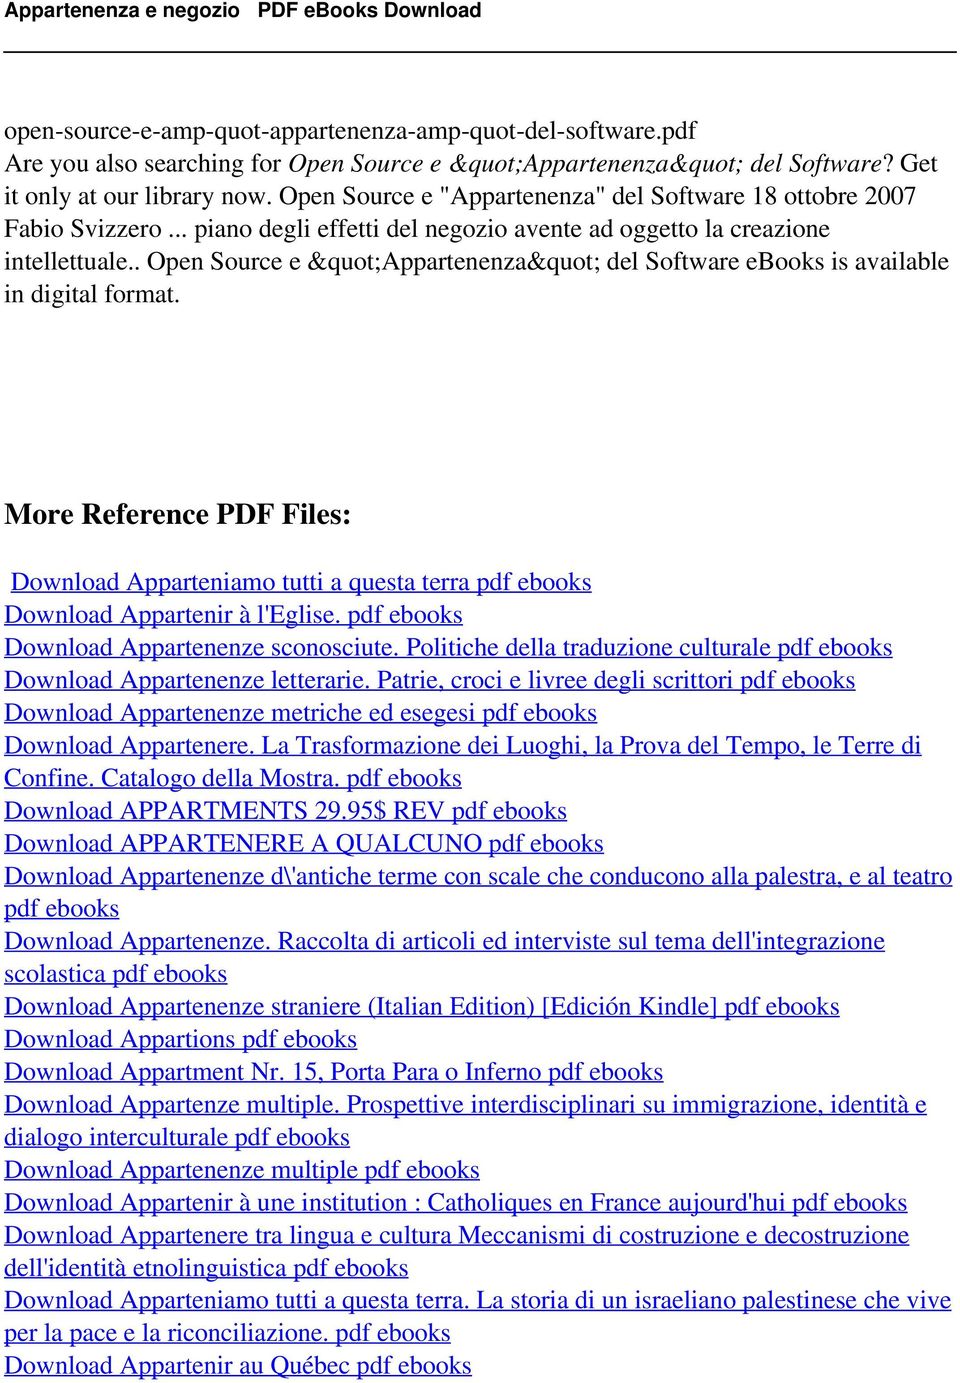 . Open Source e "Appartenenza" del Software ebooks is available in digital format. More Reference PDF Files: Download Apparteniamo tutti a questa terra pdf ebooks Download Appartenir à l'eglise.